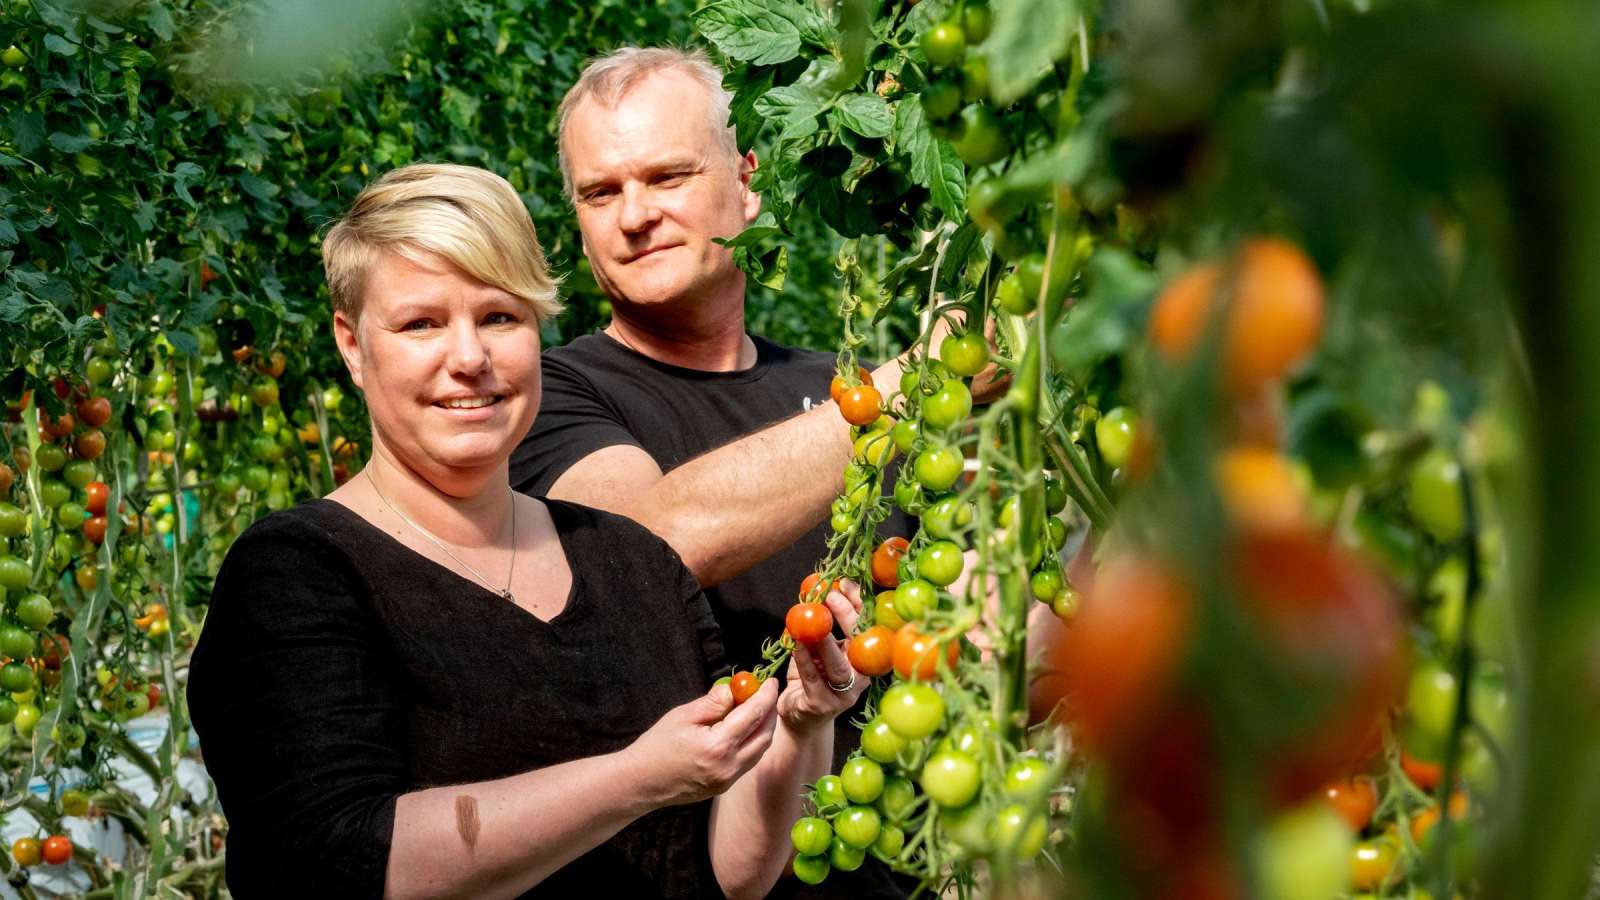 Kajsa ja Johan Lassander kertovat, että tomaattitarhureilla työtä on paljon, mutta se on itsenäistä ja palkitsevaa.